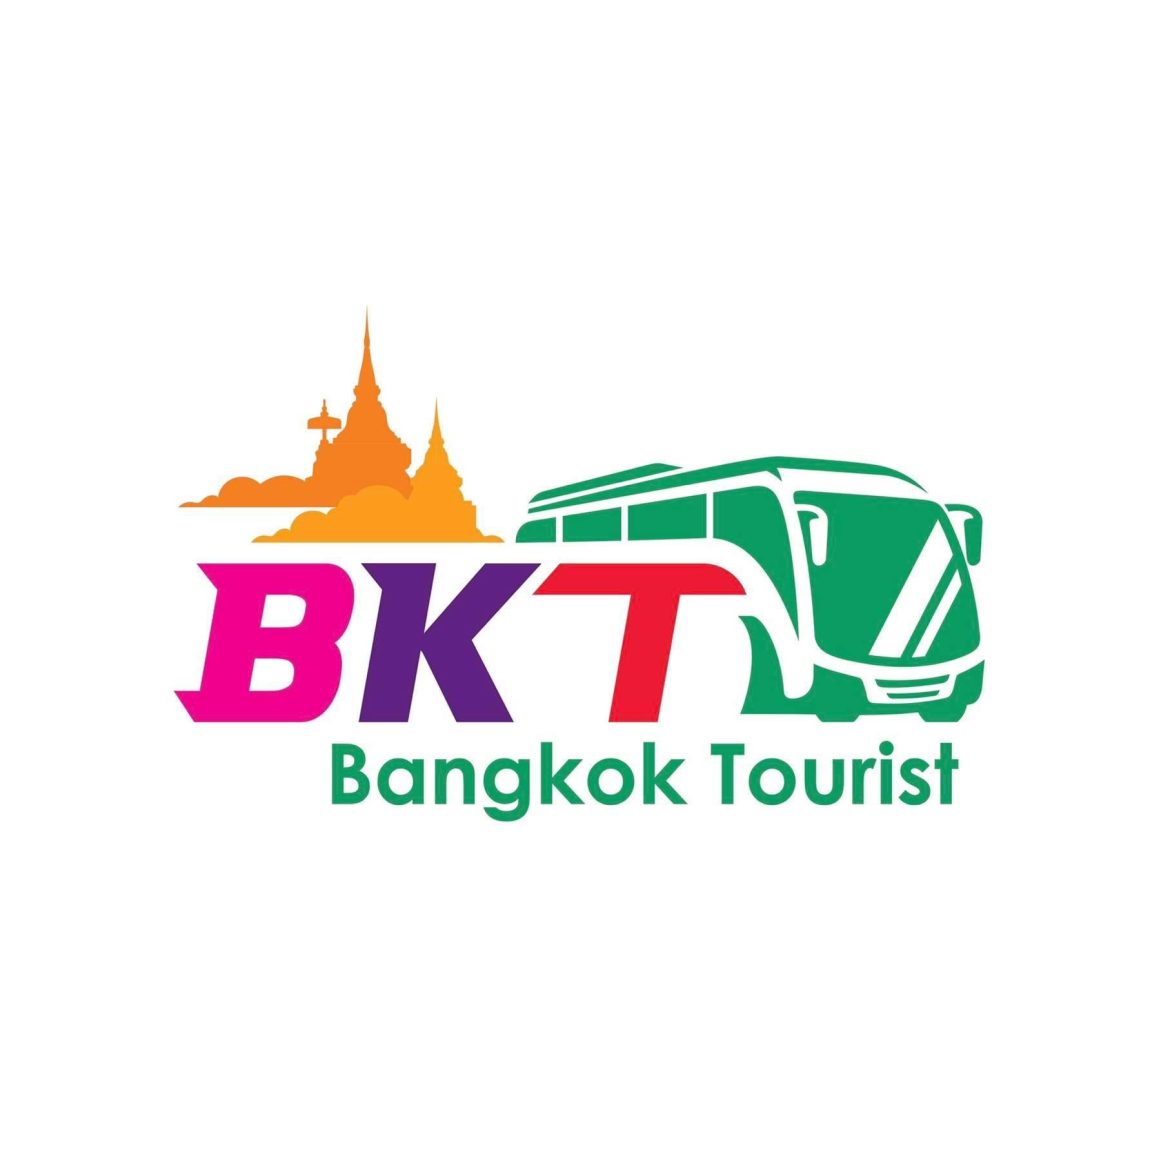 BKT Bangkok Tourist Chuyên Cung cấp Dịch vụ Land Tours du lịch chất lượng tại Thái Lan